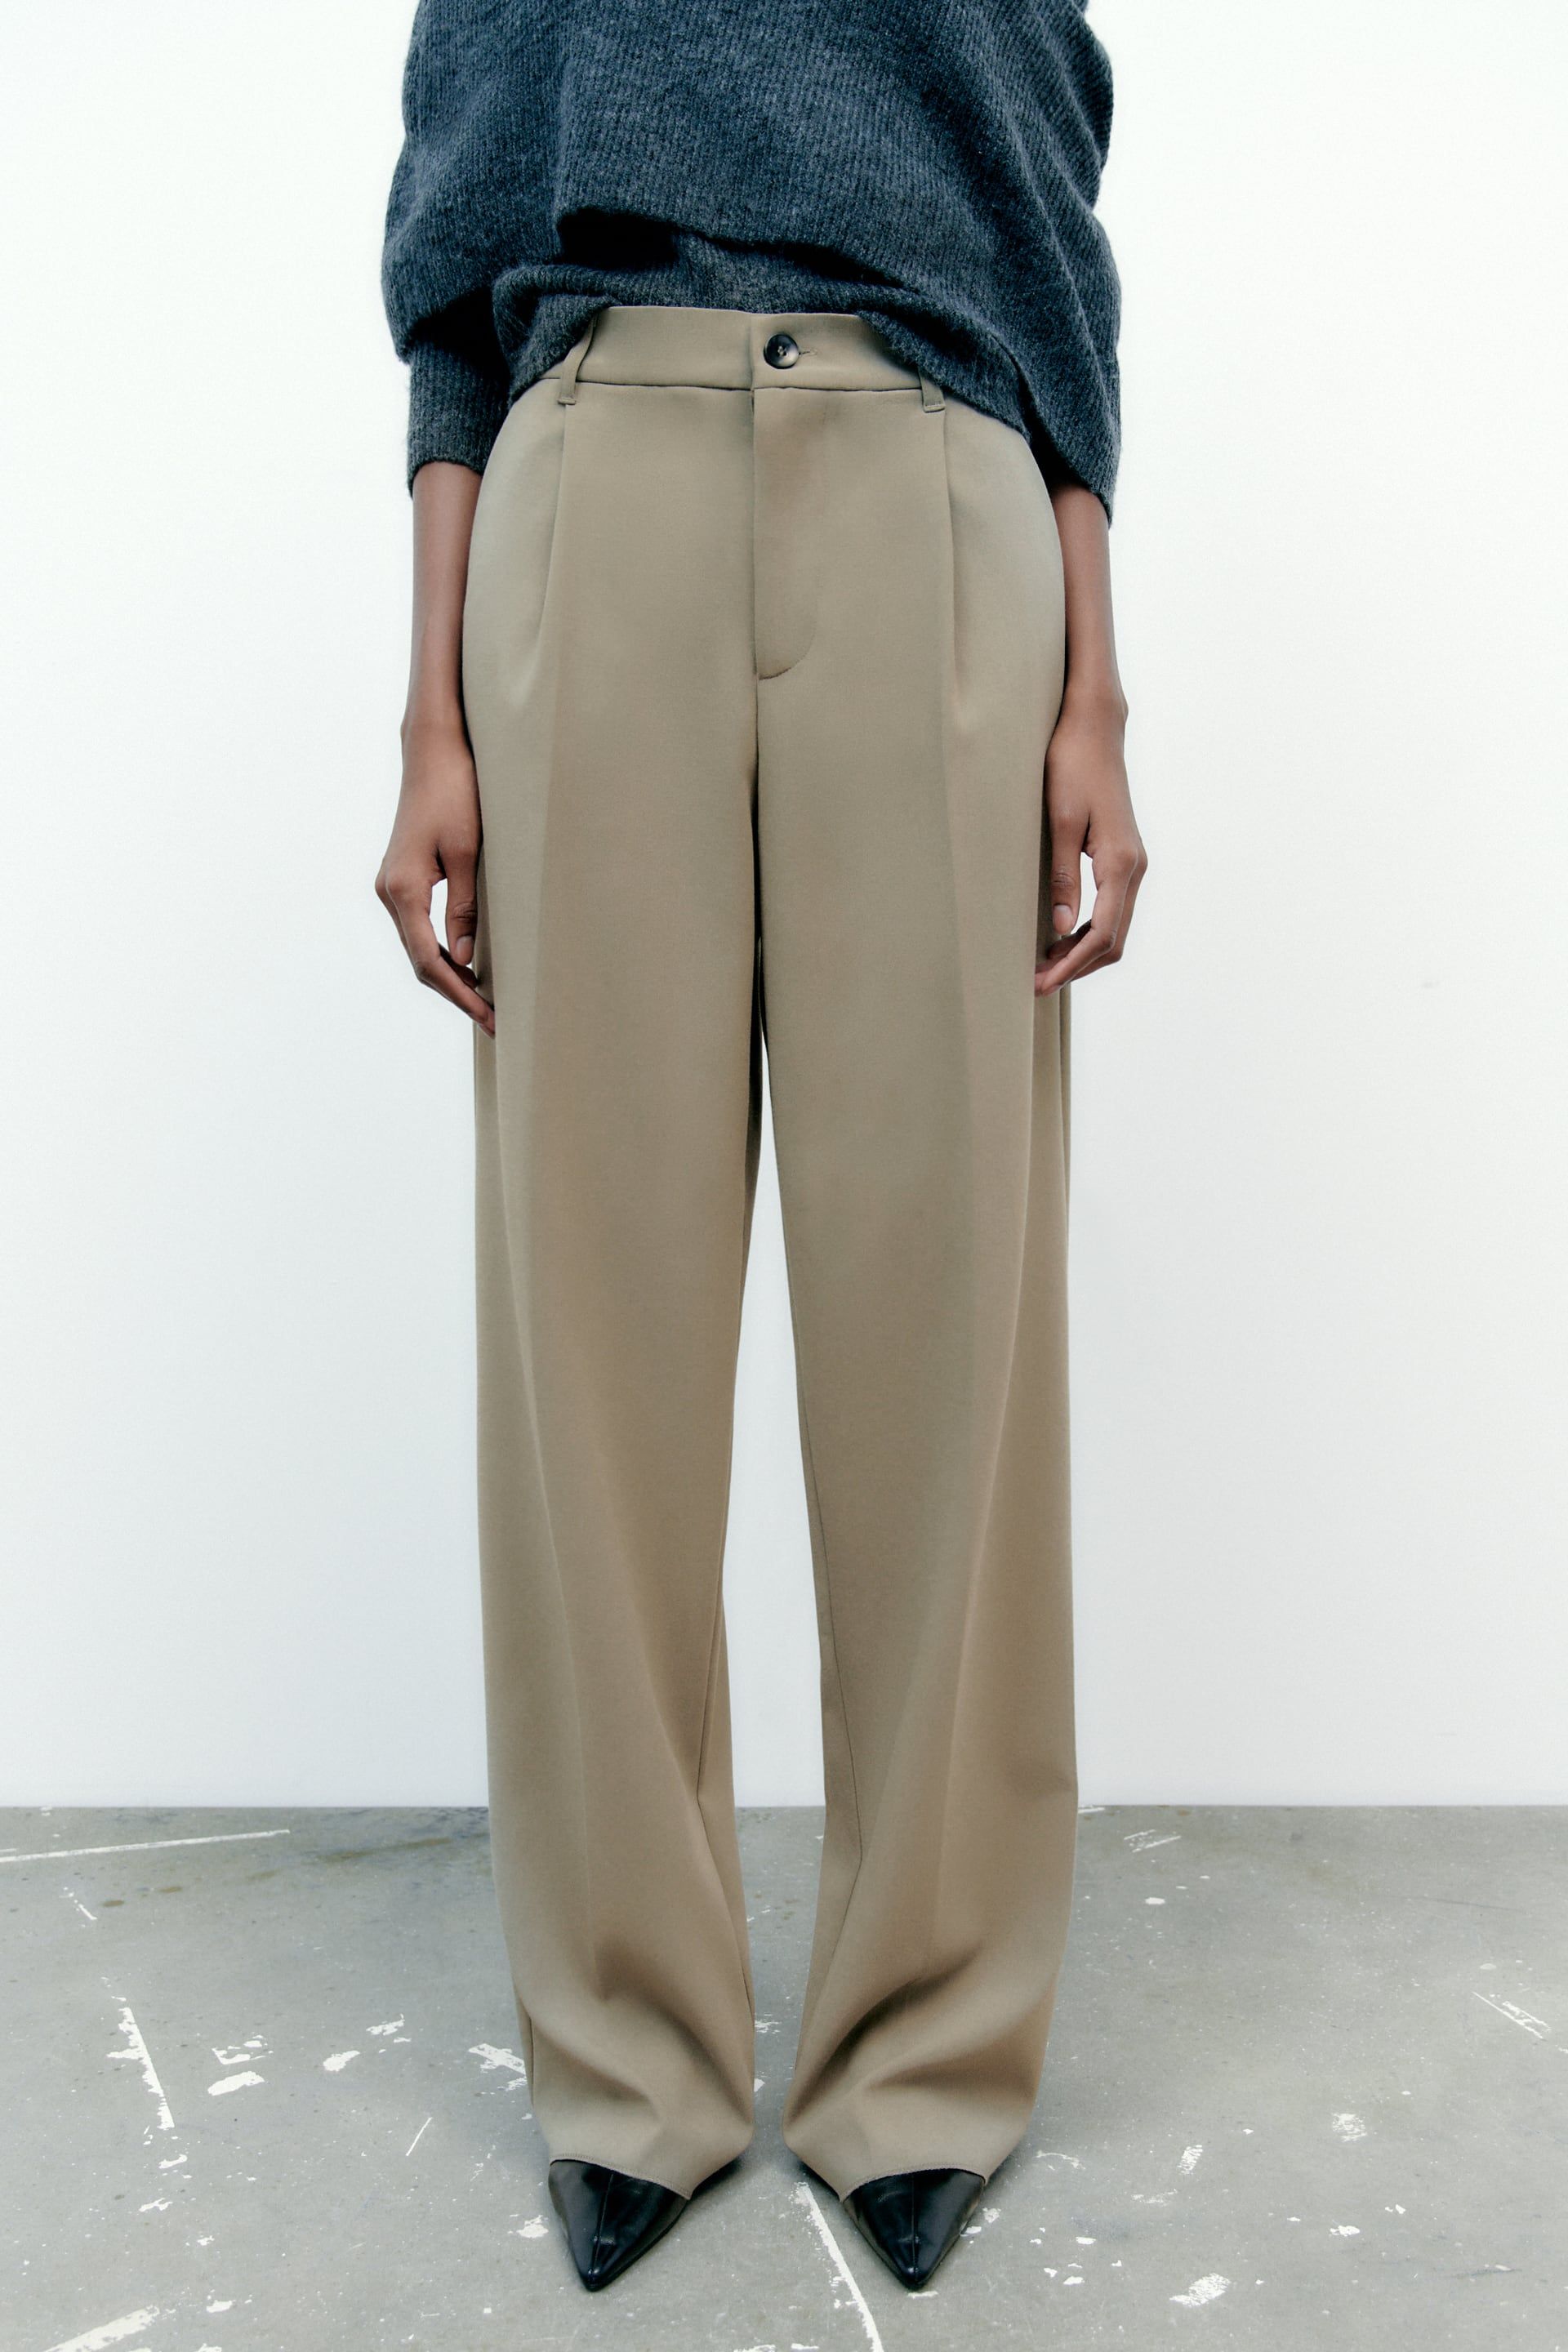 Los 5 pantalones de Zara que debes tener este 2023 según la